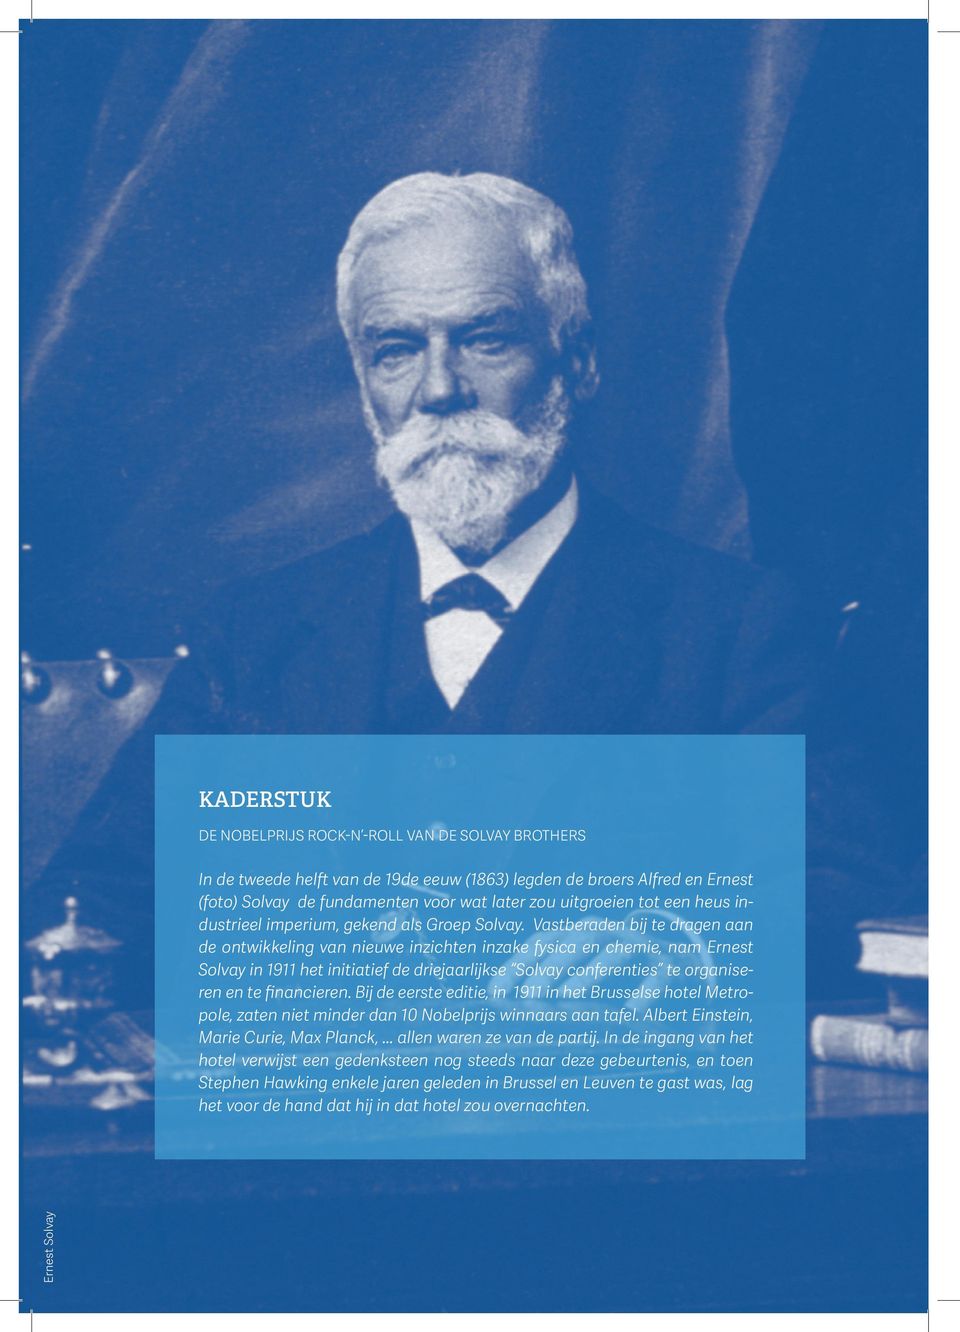 Vastberaden bij te dragen aan de ontwikkeling van nieuwe inzichten inzake fysica en chemie, nam Ernest Solvay in 1911 het initiatief de driejaarlijkse Solvay conferenties te organiseren en te